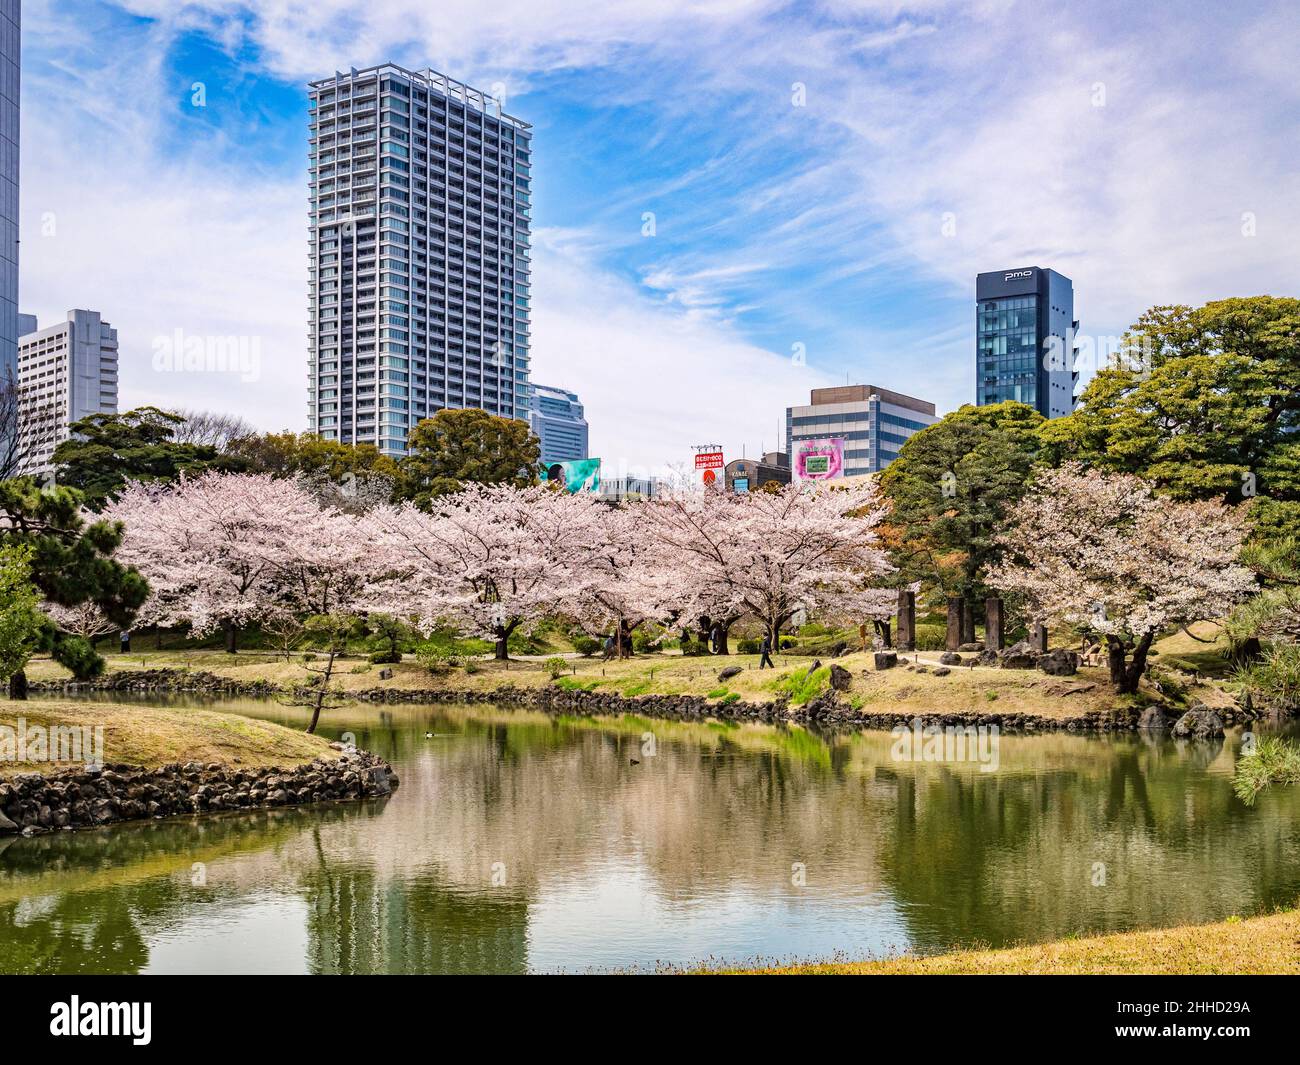 5 de abril de 2019: Tokio, Japón - Lago y flor de cerezo en los jardines Kyu-Shiba-rikyu, un jardín de estilo tradicional en el centro de Tokio. Foto de stock